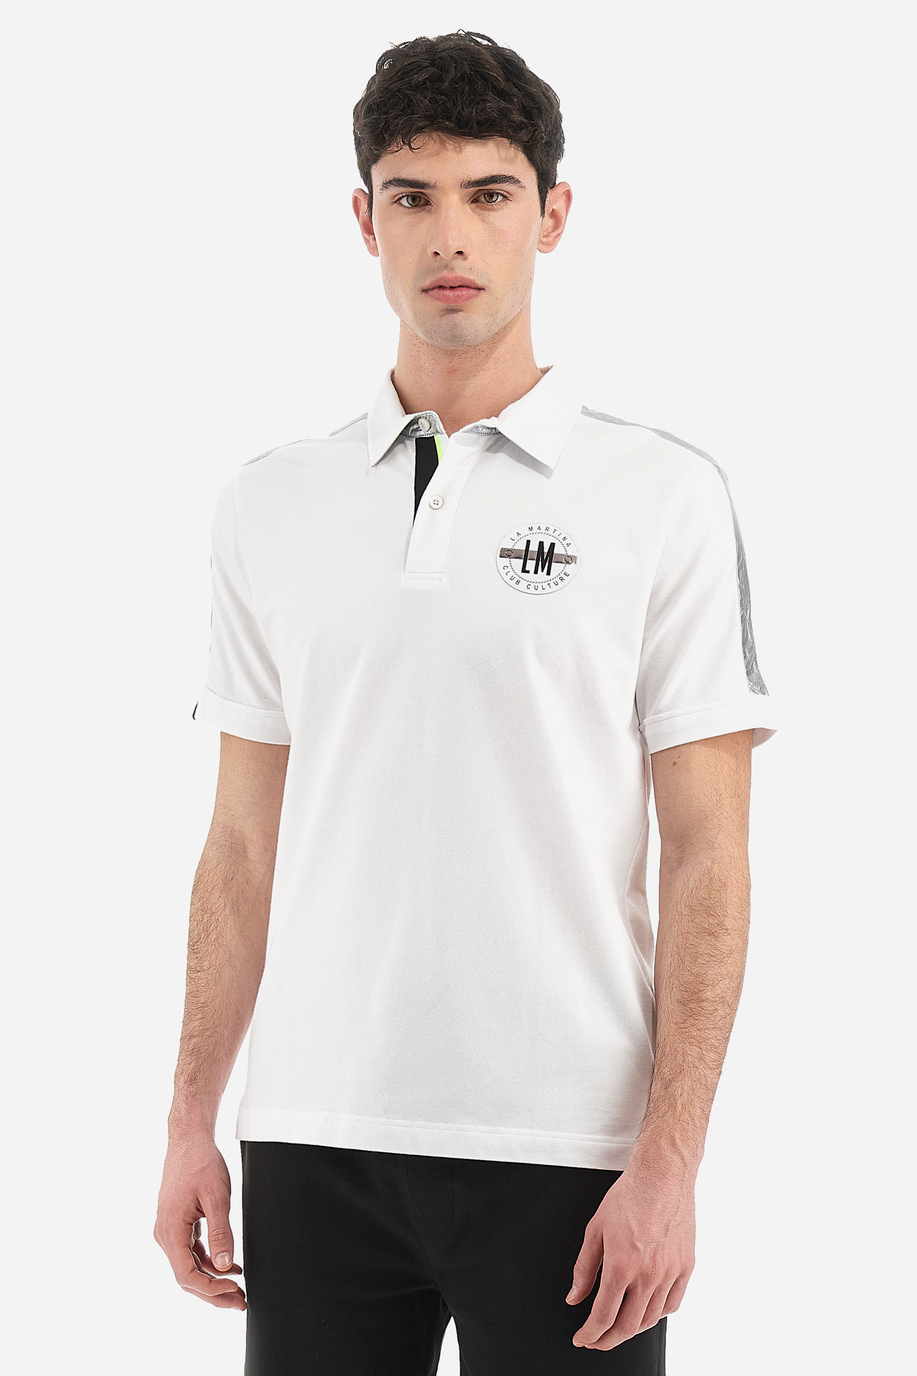 Kurzärmliges Herren-Poloshirt aus Baumwollmischung in normaler Passform - Virge - Poloshirts | La Martina - Official Online Shop